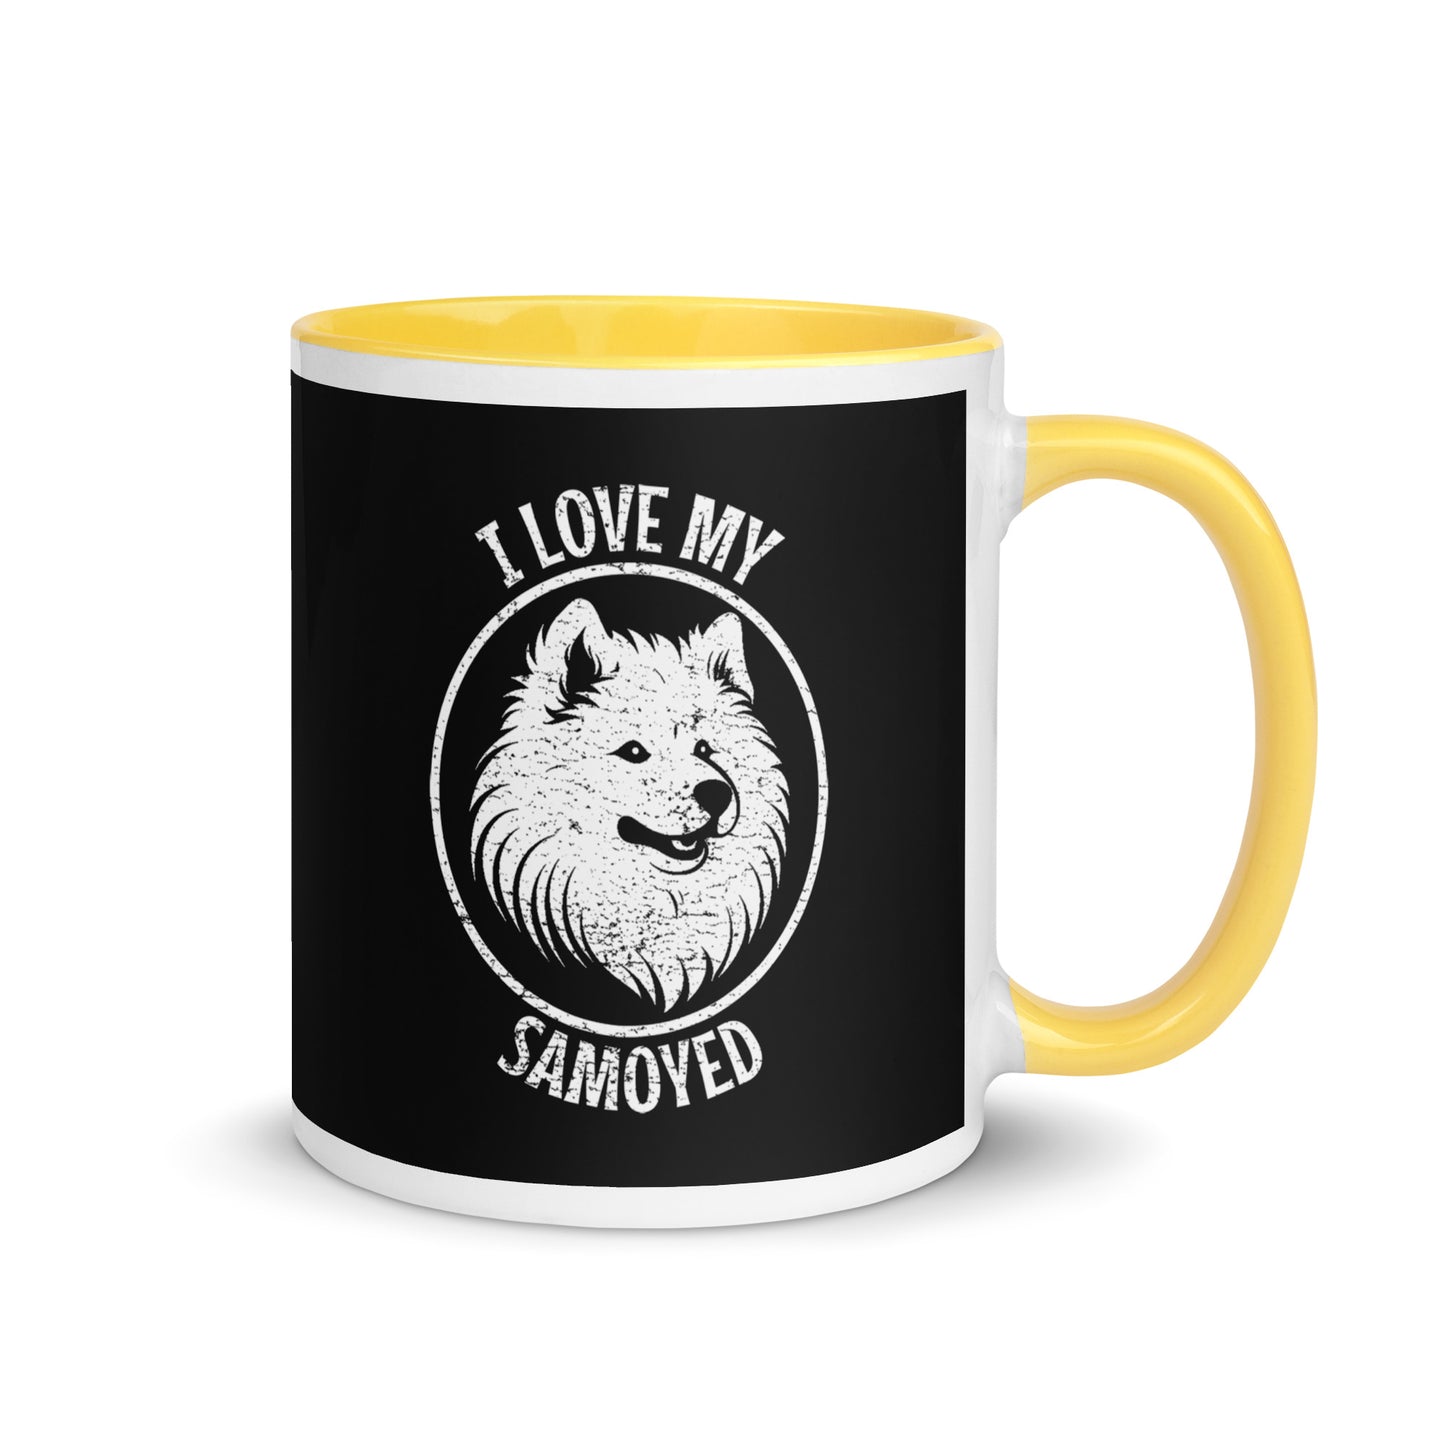 Samoyed Mug, Samoyed gift, gift for dog mom, custom dog gift, dog owner gift, pet memorial gift